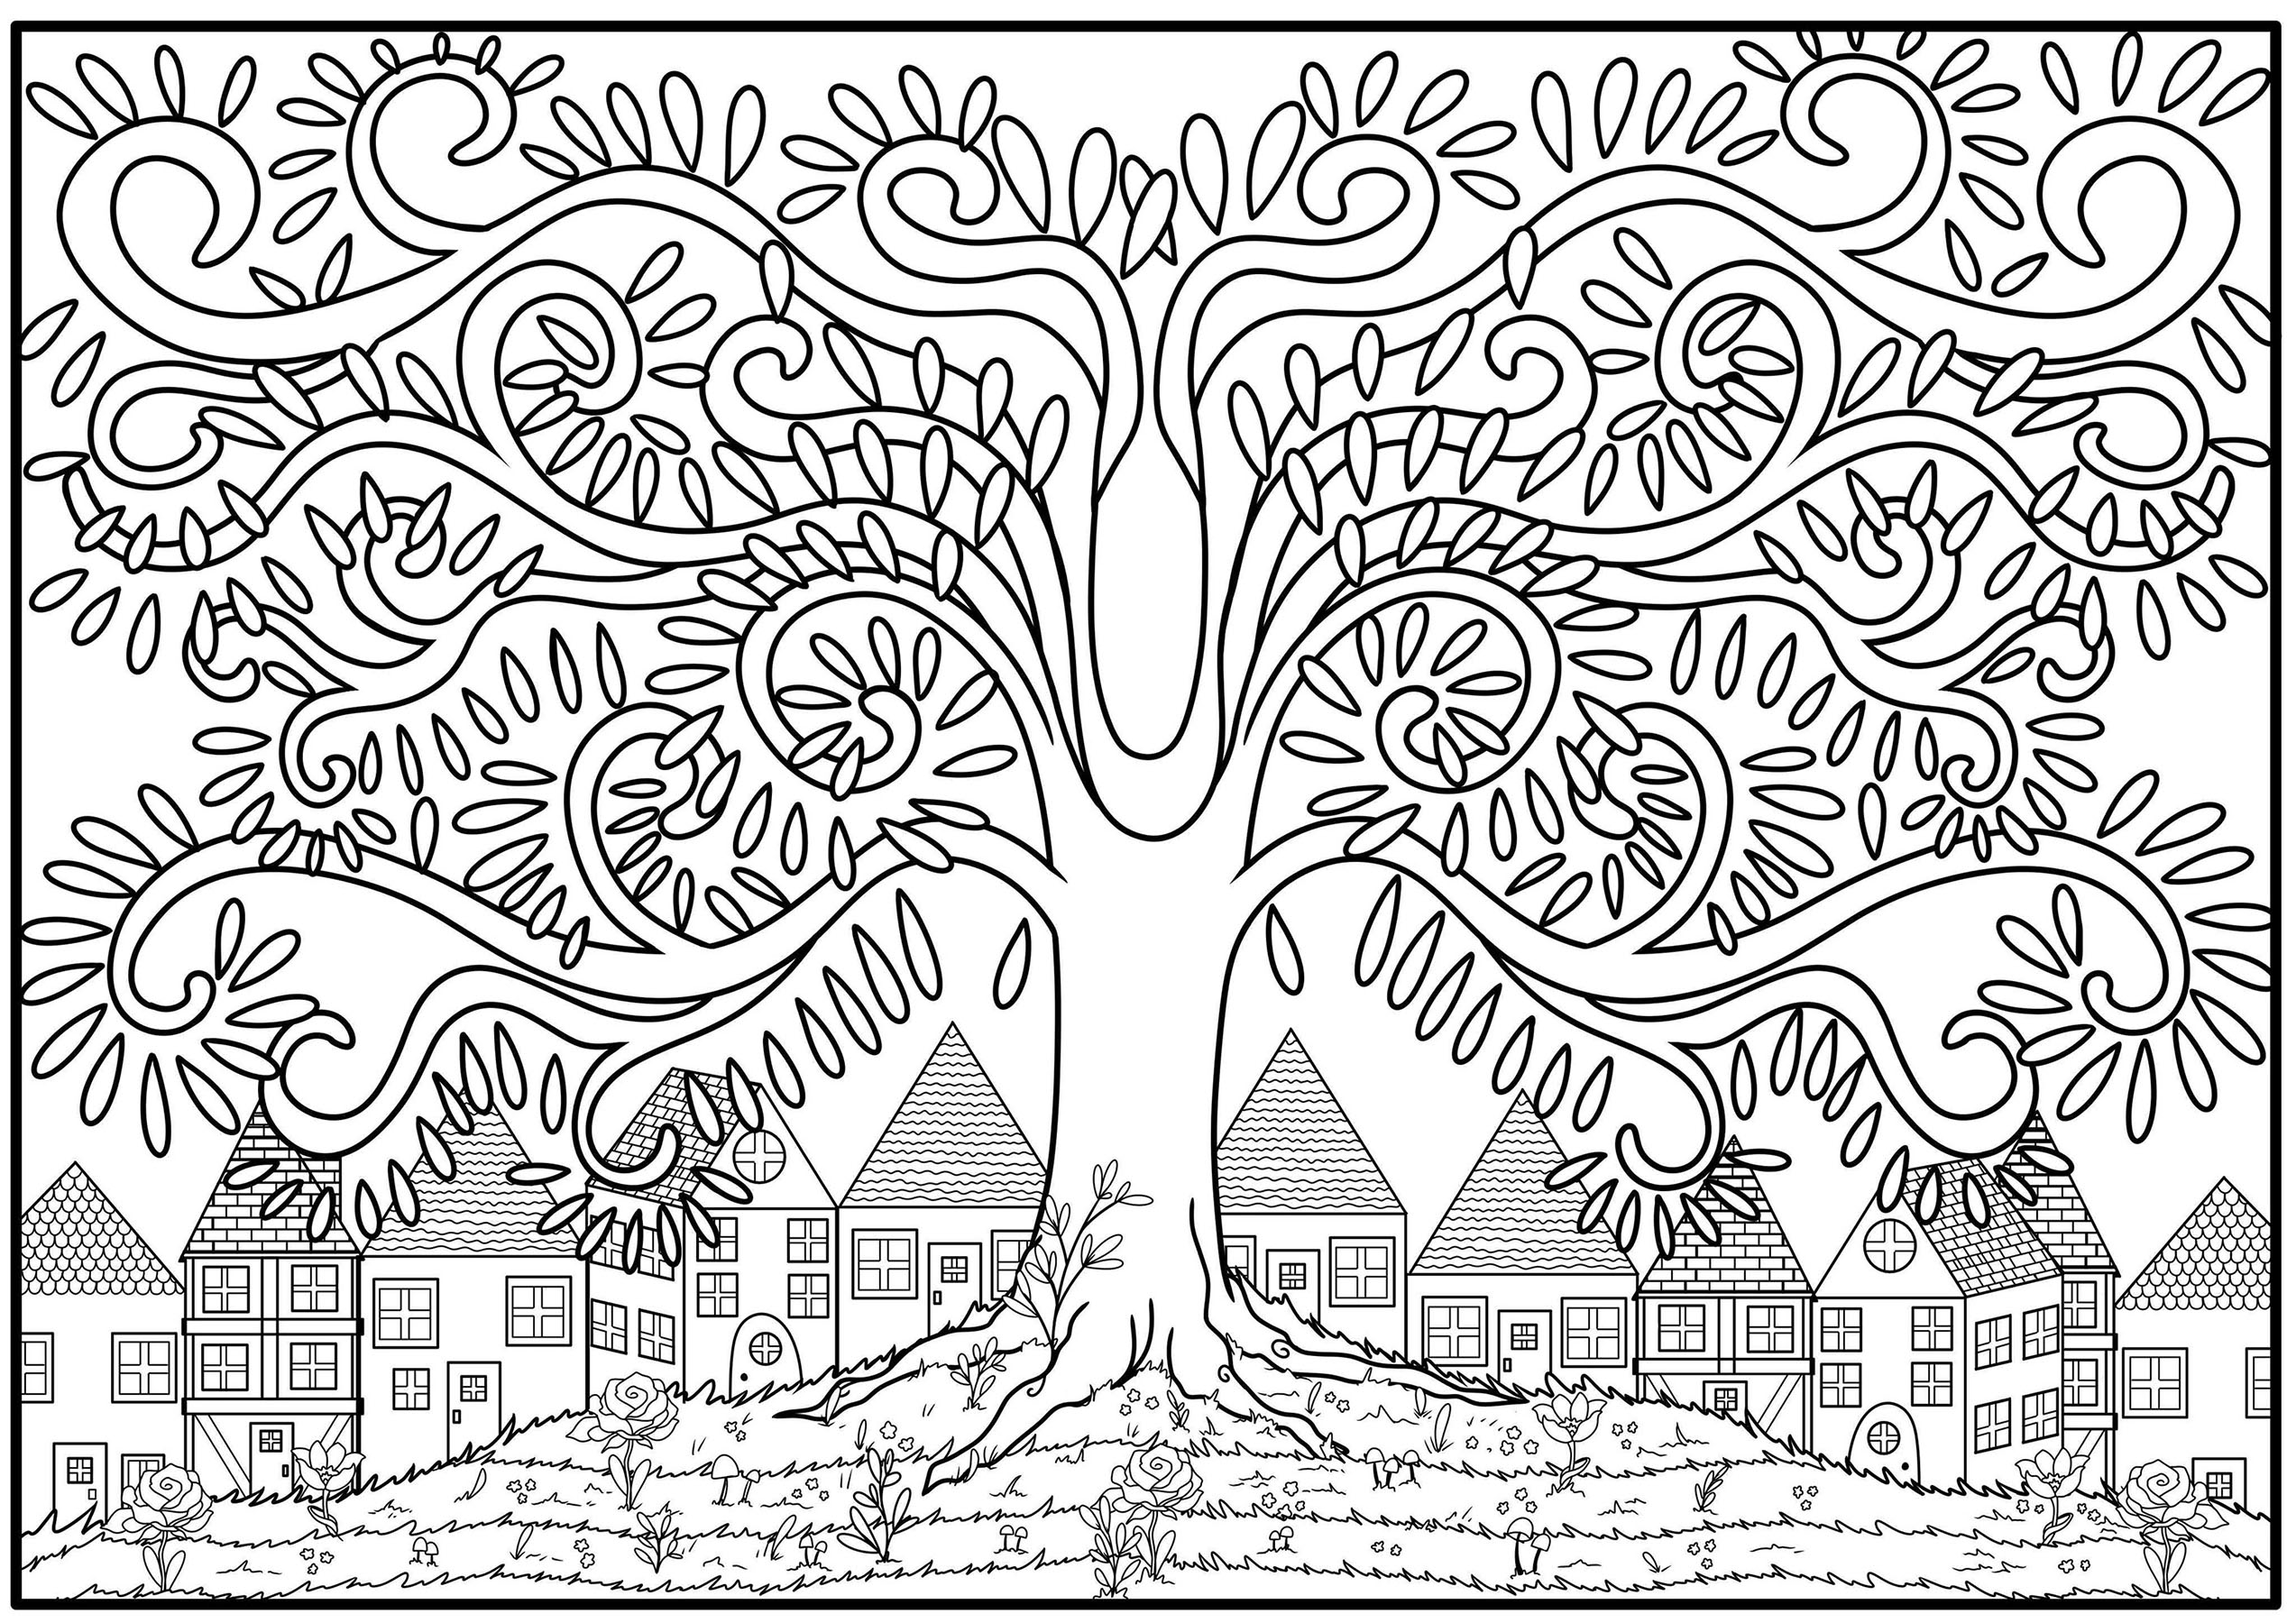 Página colorida de uma árvore com ramo em forma de arabesco, no topo de uma colina florida com casas ao fundo.